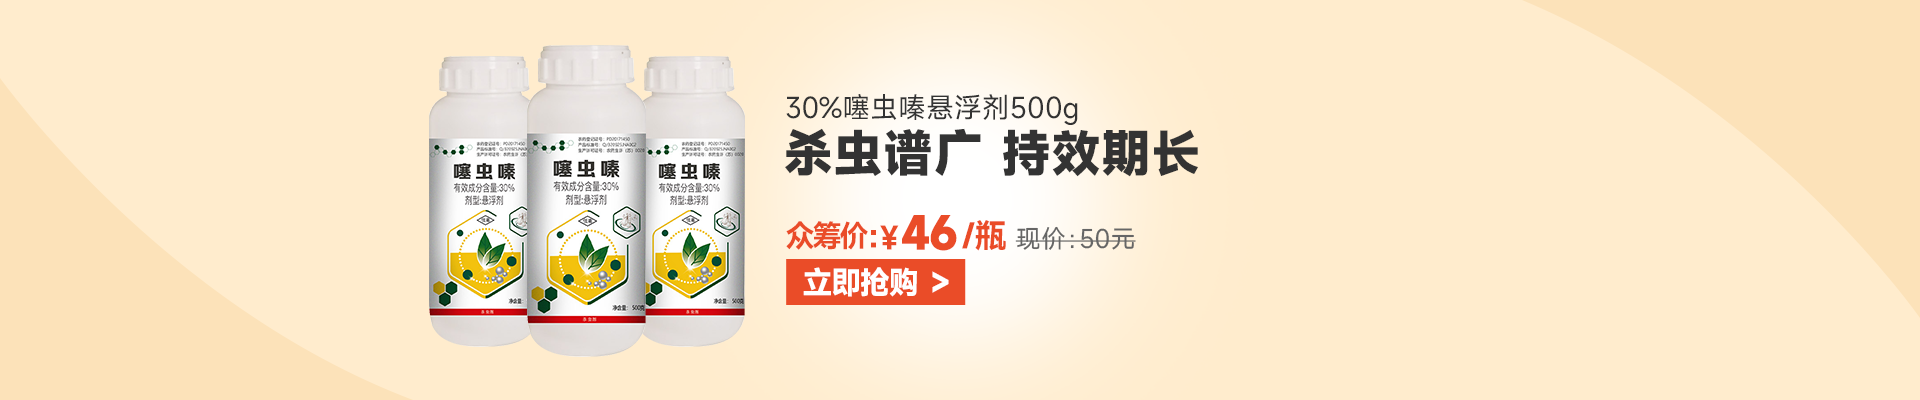 【8月】众筹-大丰收 30%噻虫嗪 悬浮剂500g